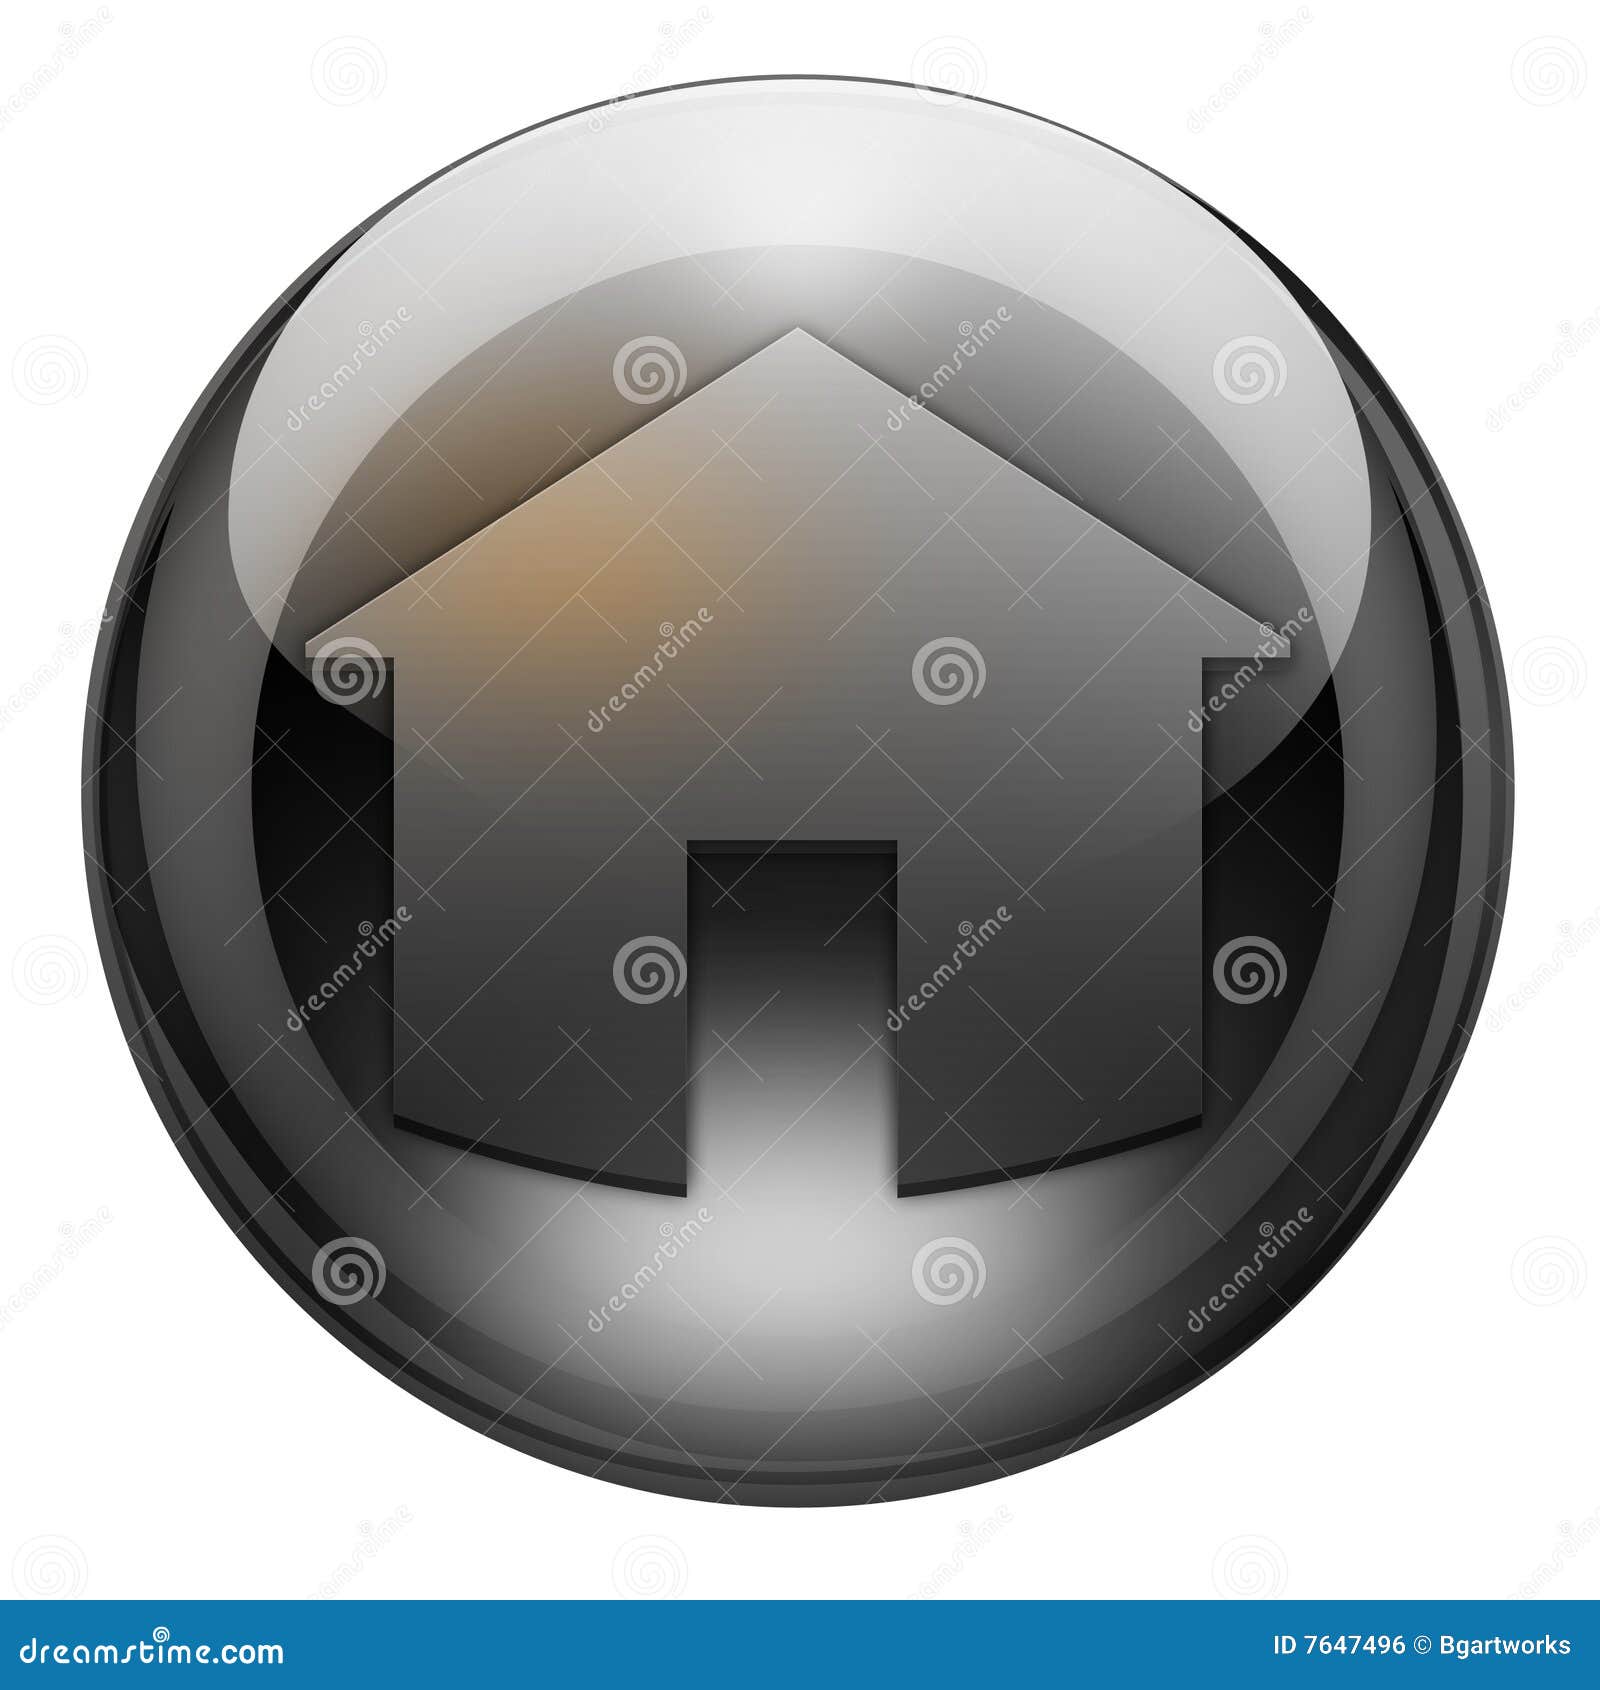 graphite home button